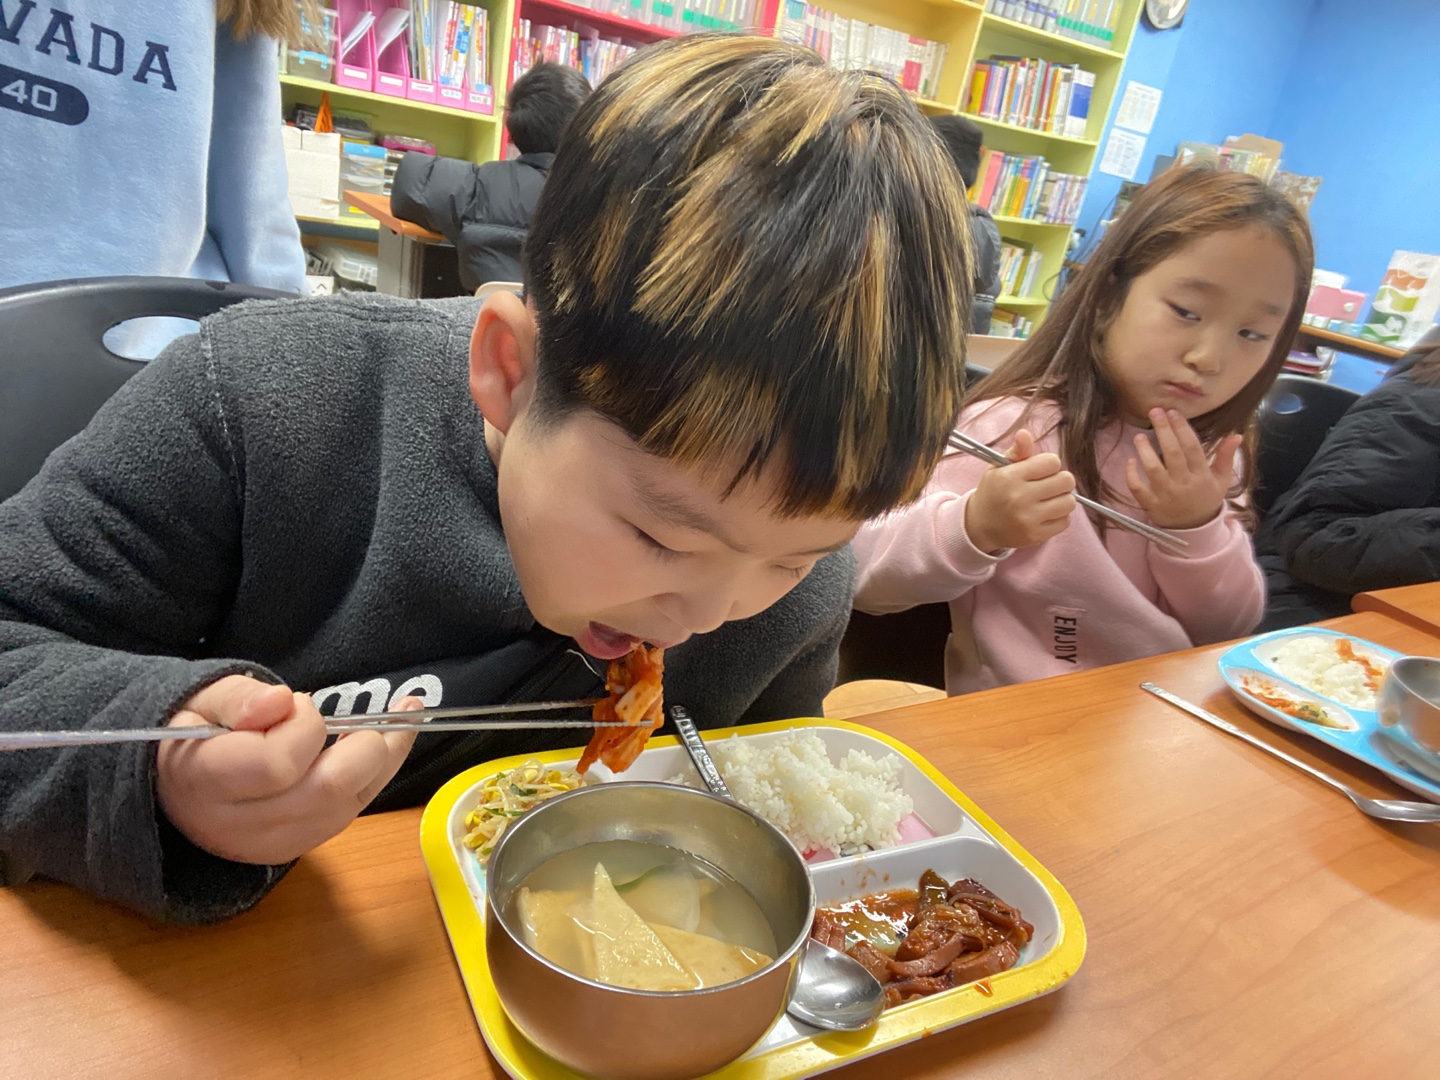 신승우 학생이 새로운 김치가 맛있다며 먹는 모습입니다.